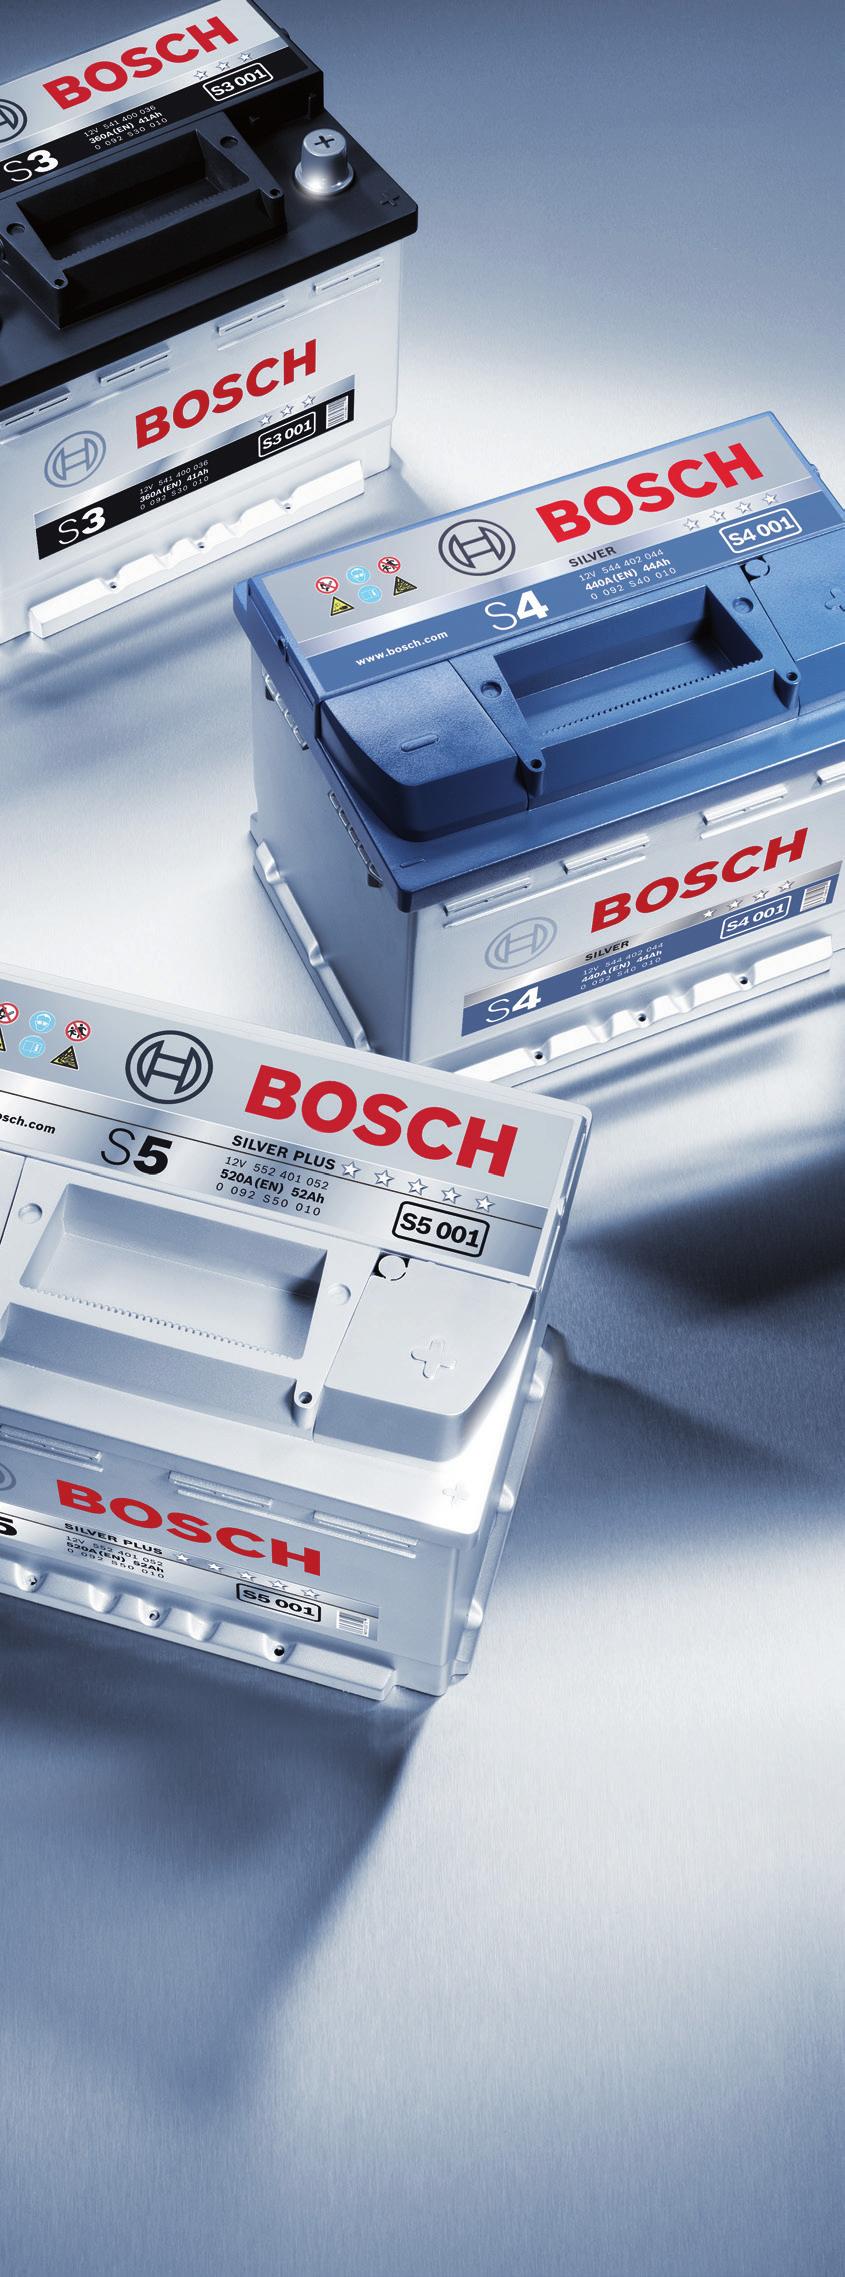 Bosch: o parceiro imprescindível na sua oficina Equipamentos para o serviço de baterias: comprovar, carregar e arrancar de forma profissional.